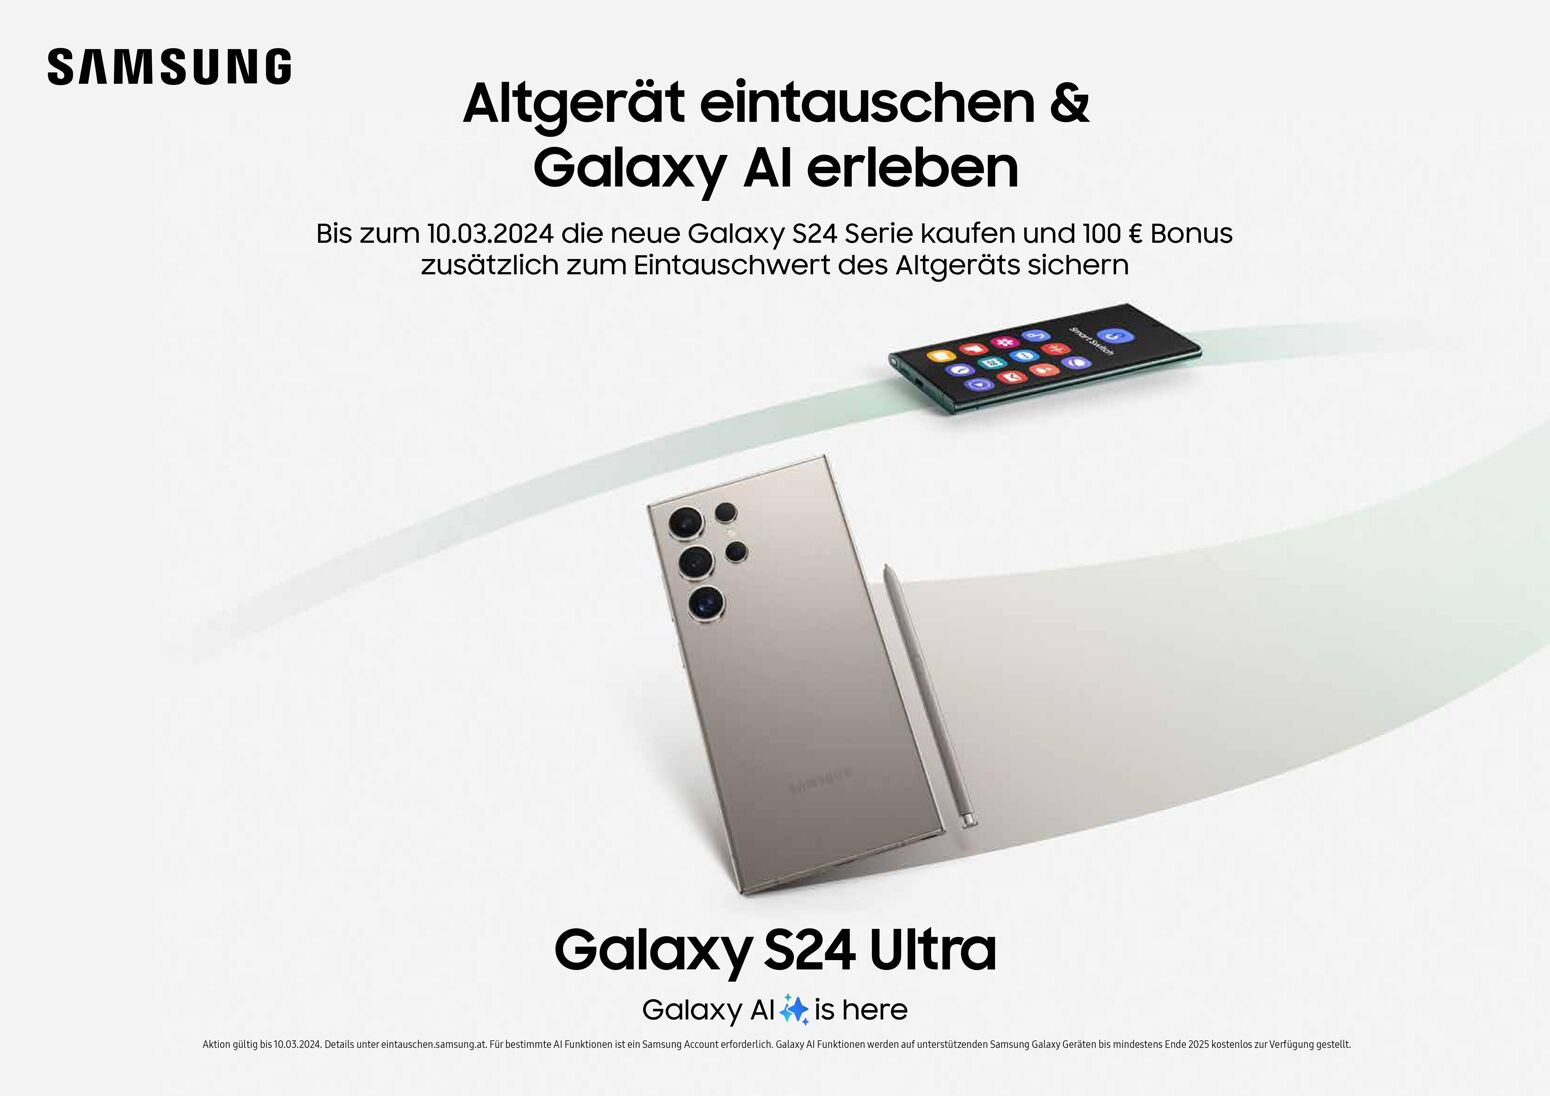 Samsung Galaxy S24: Die Funktionen des neuen Samsung-Smartphones